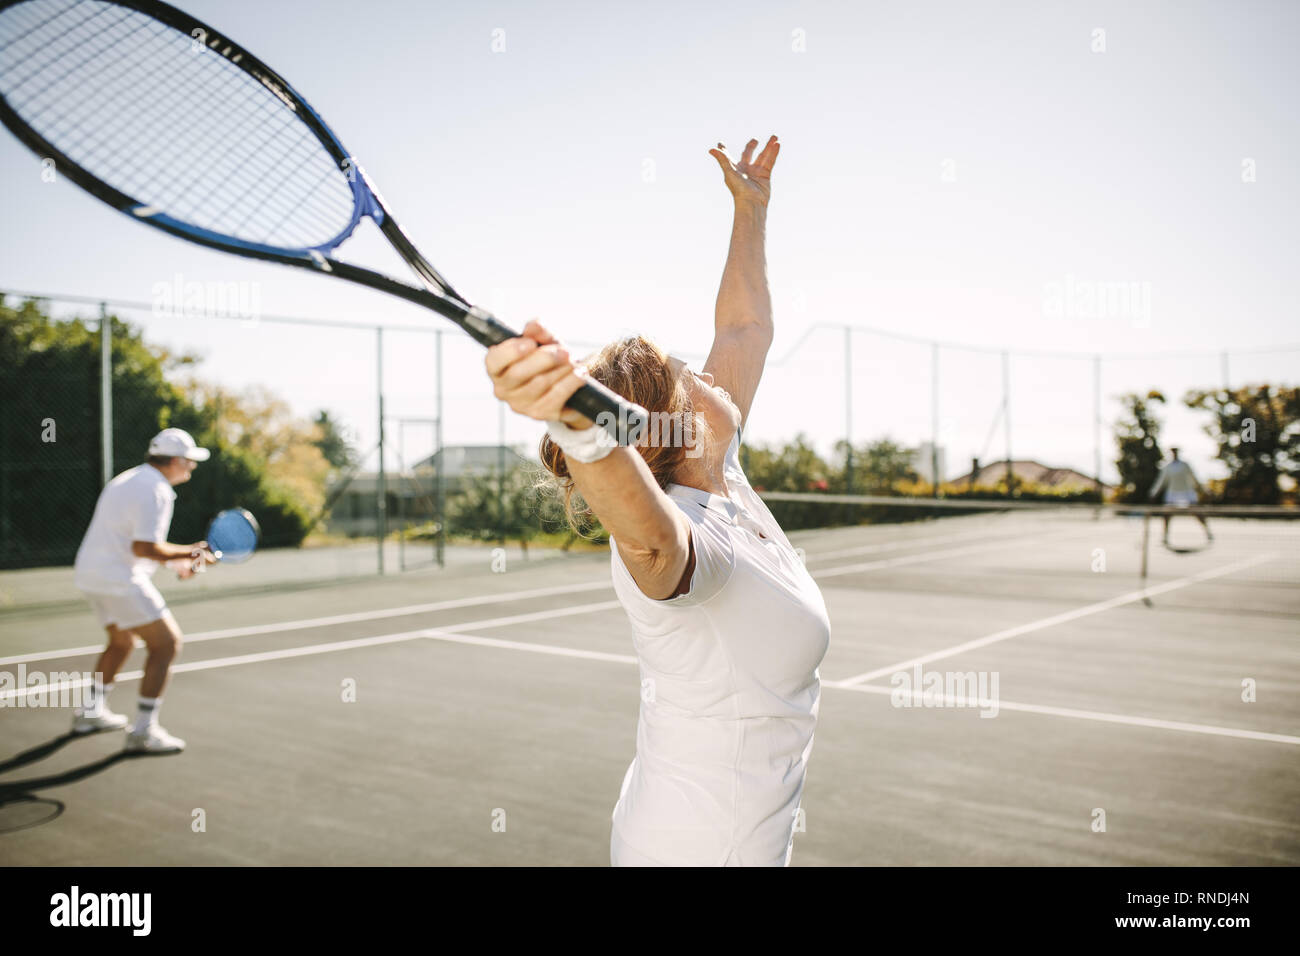 Vista posteriore di una donna che serve la sfera durante la riproduzione di un doppio misto match di tennis. Gli uomini e le donne giocare a tennis all'aperto in una giornata di sole. Foto Stock